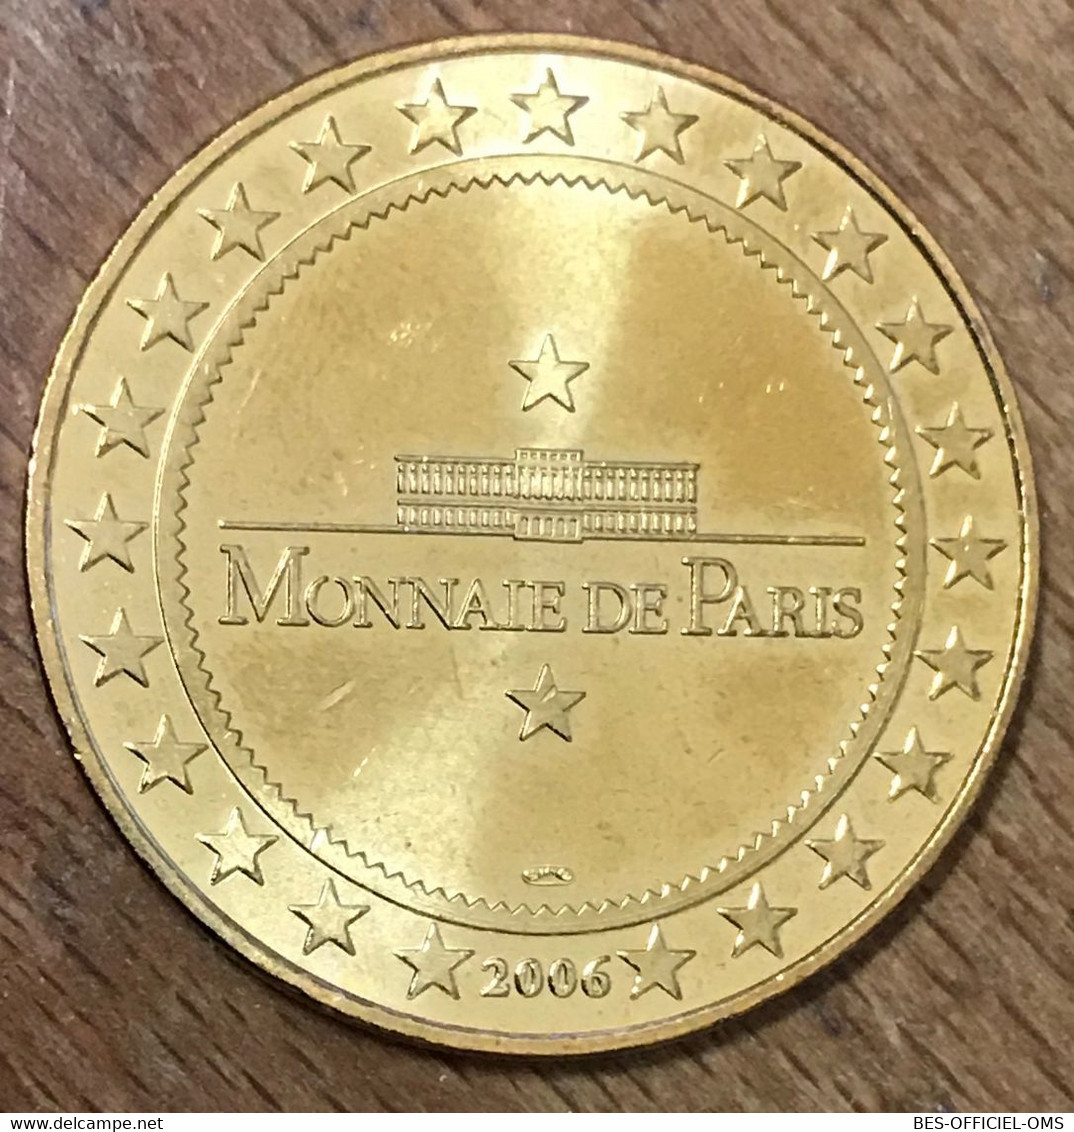 50 CHERBOURG CITÉ DE LA MER HIPPOCAMPES MDP 2006 MÉDAILLE MONNAIE DE PARIS JETON TOURISTIQUE MEDALS COINS TOKENS - 2006